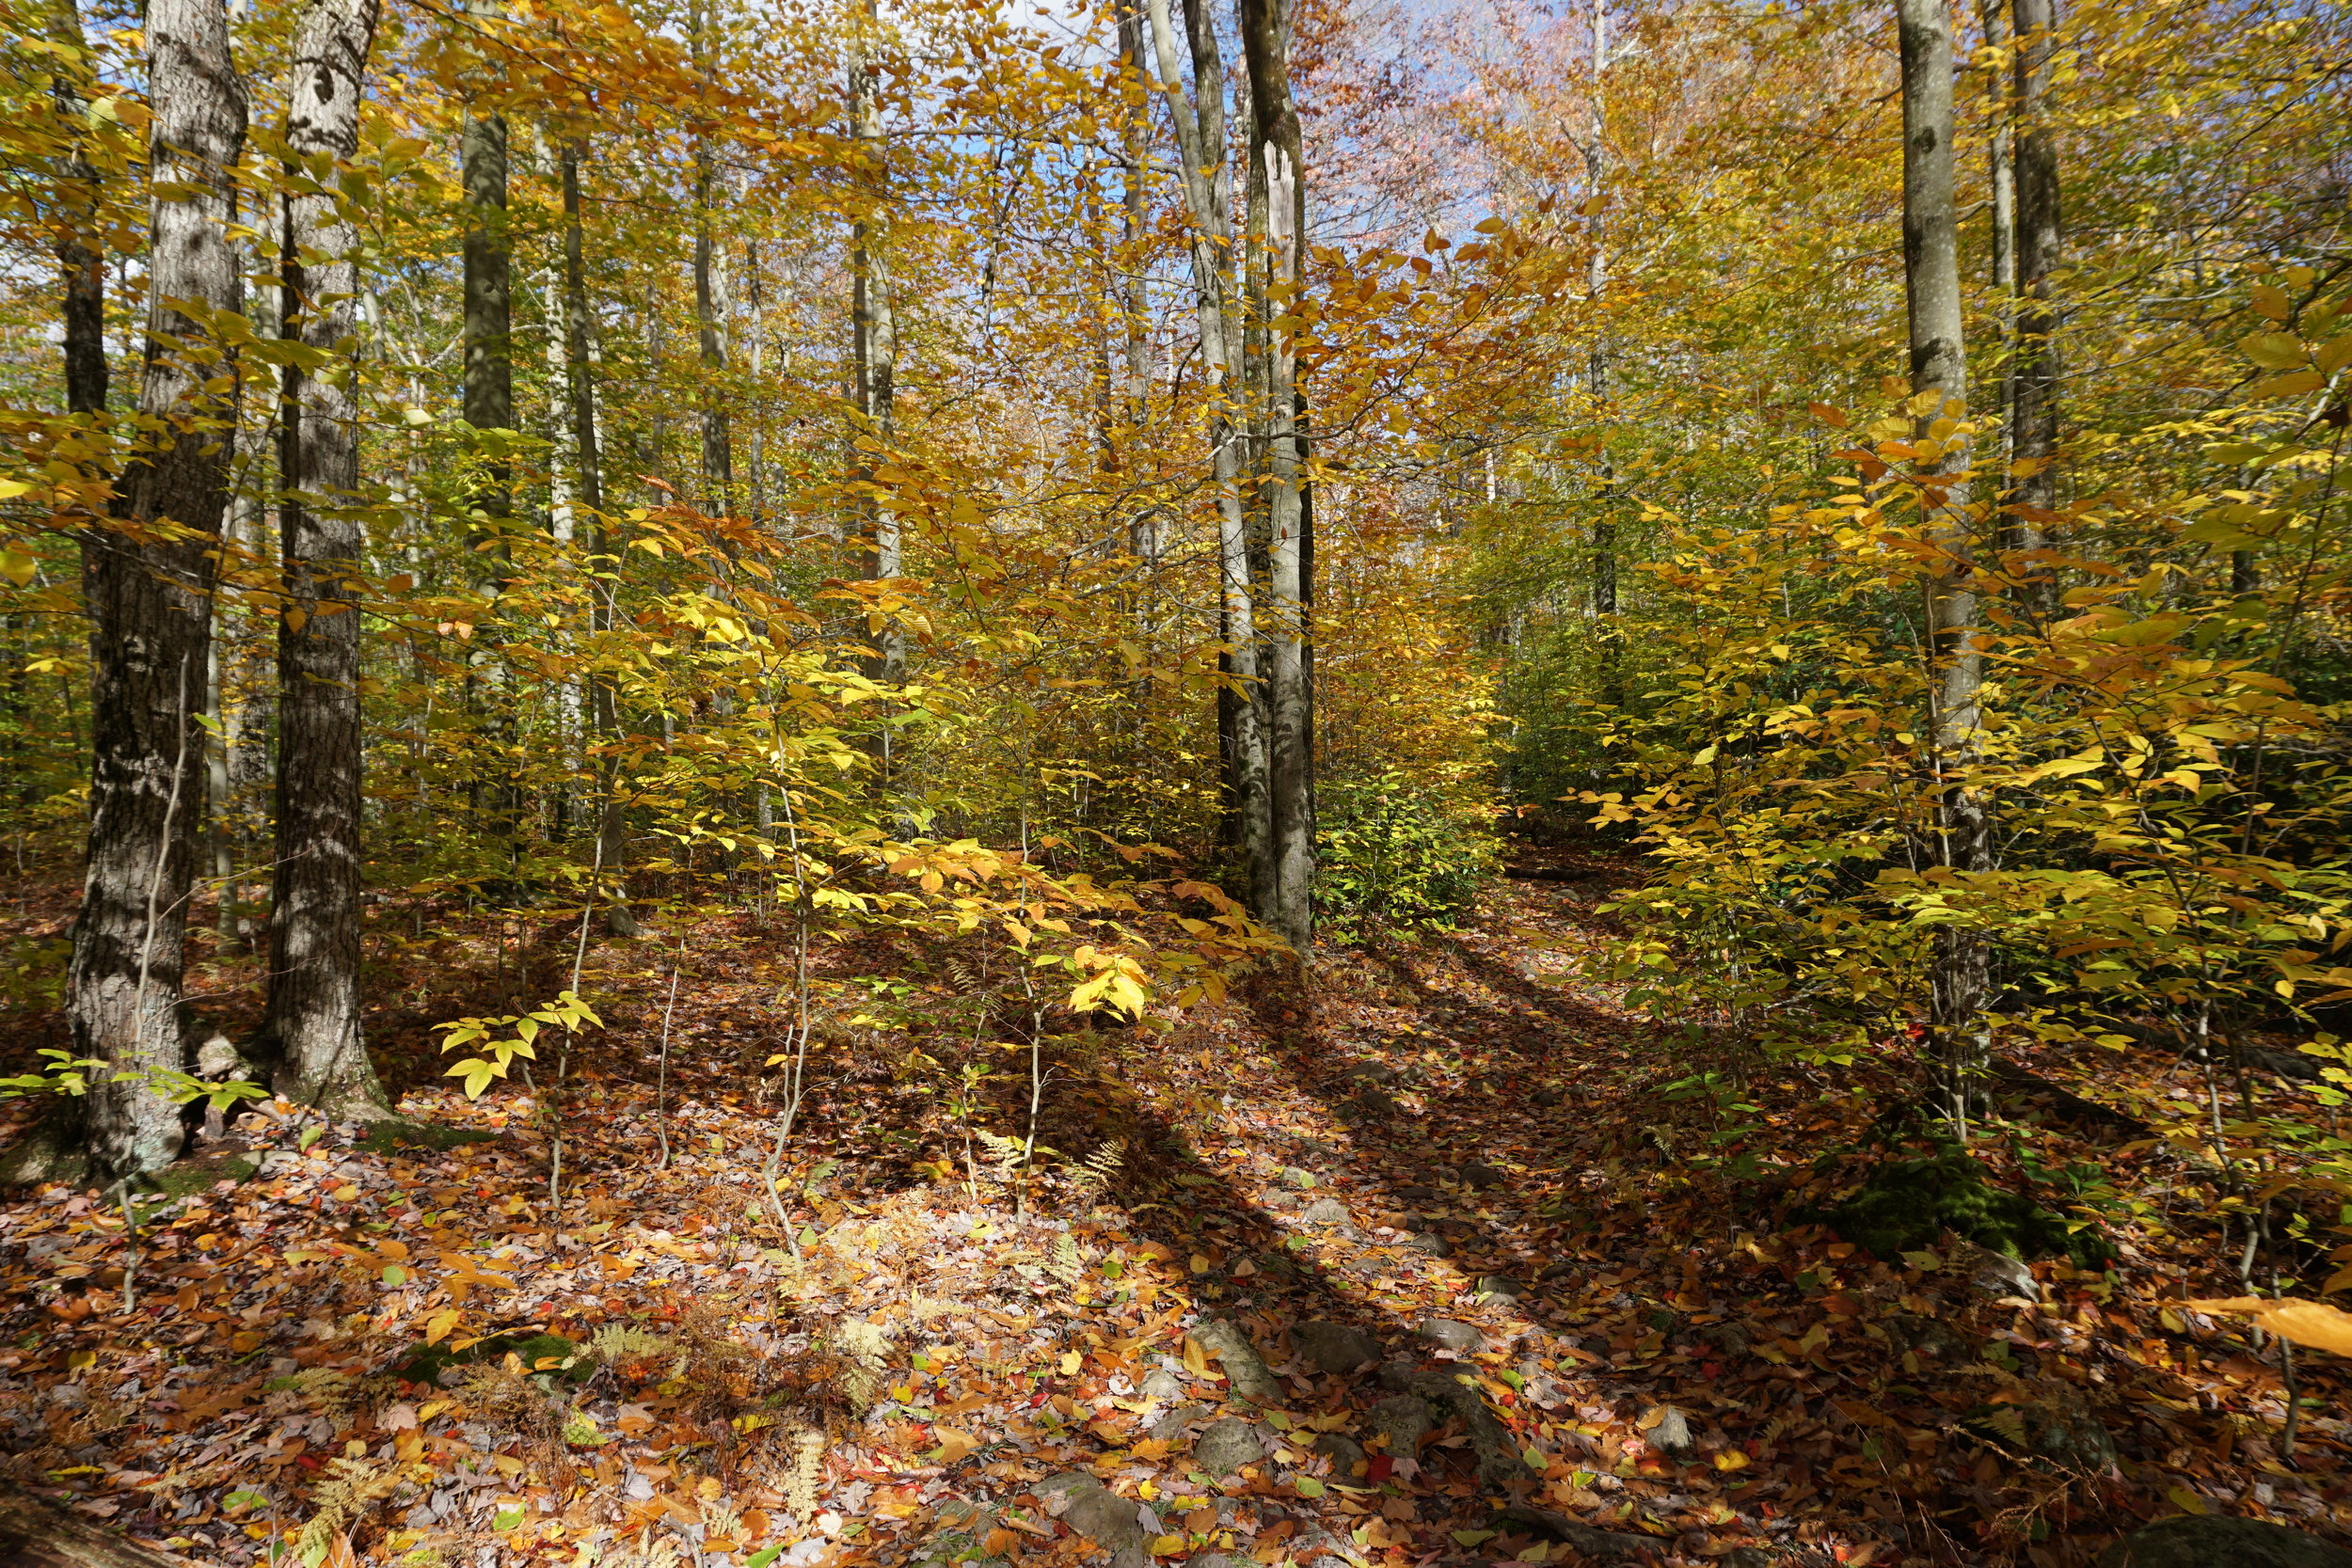 Fall foliage in Poconos mountains